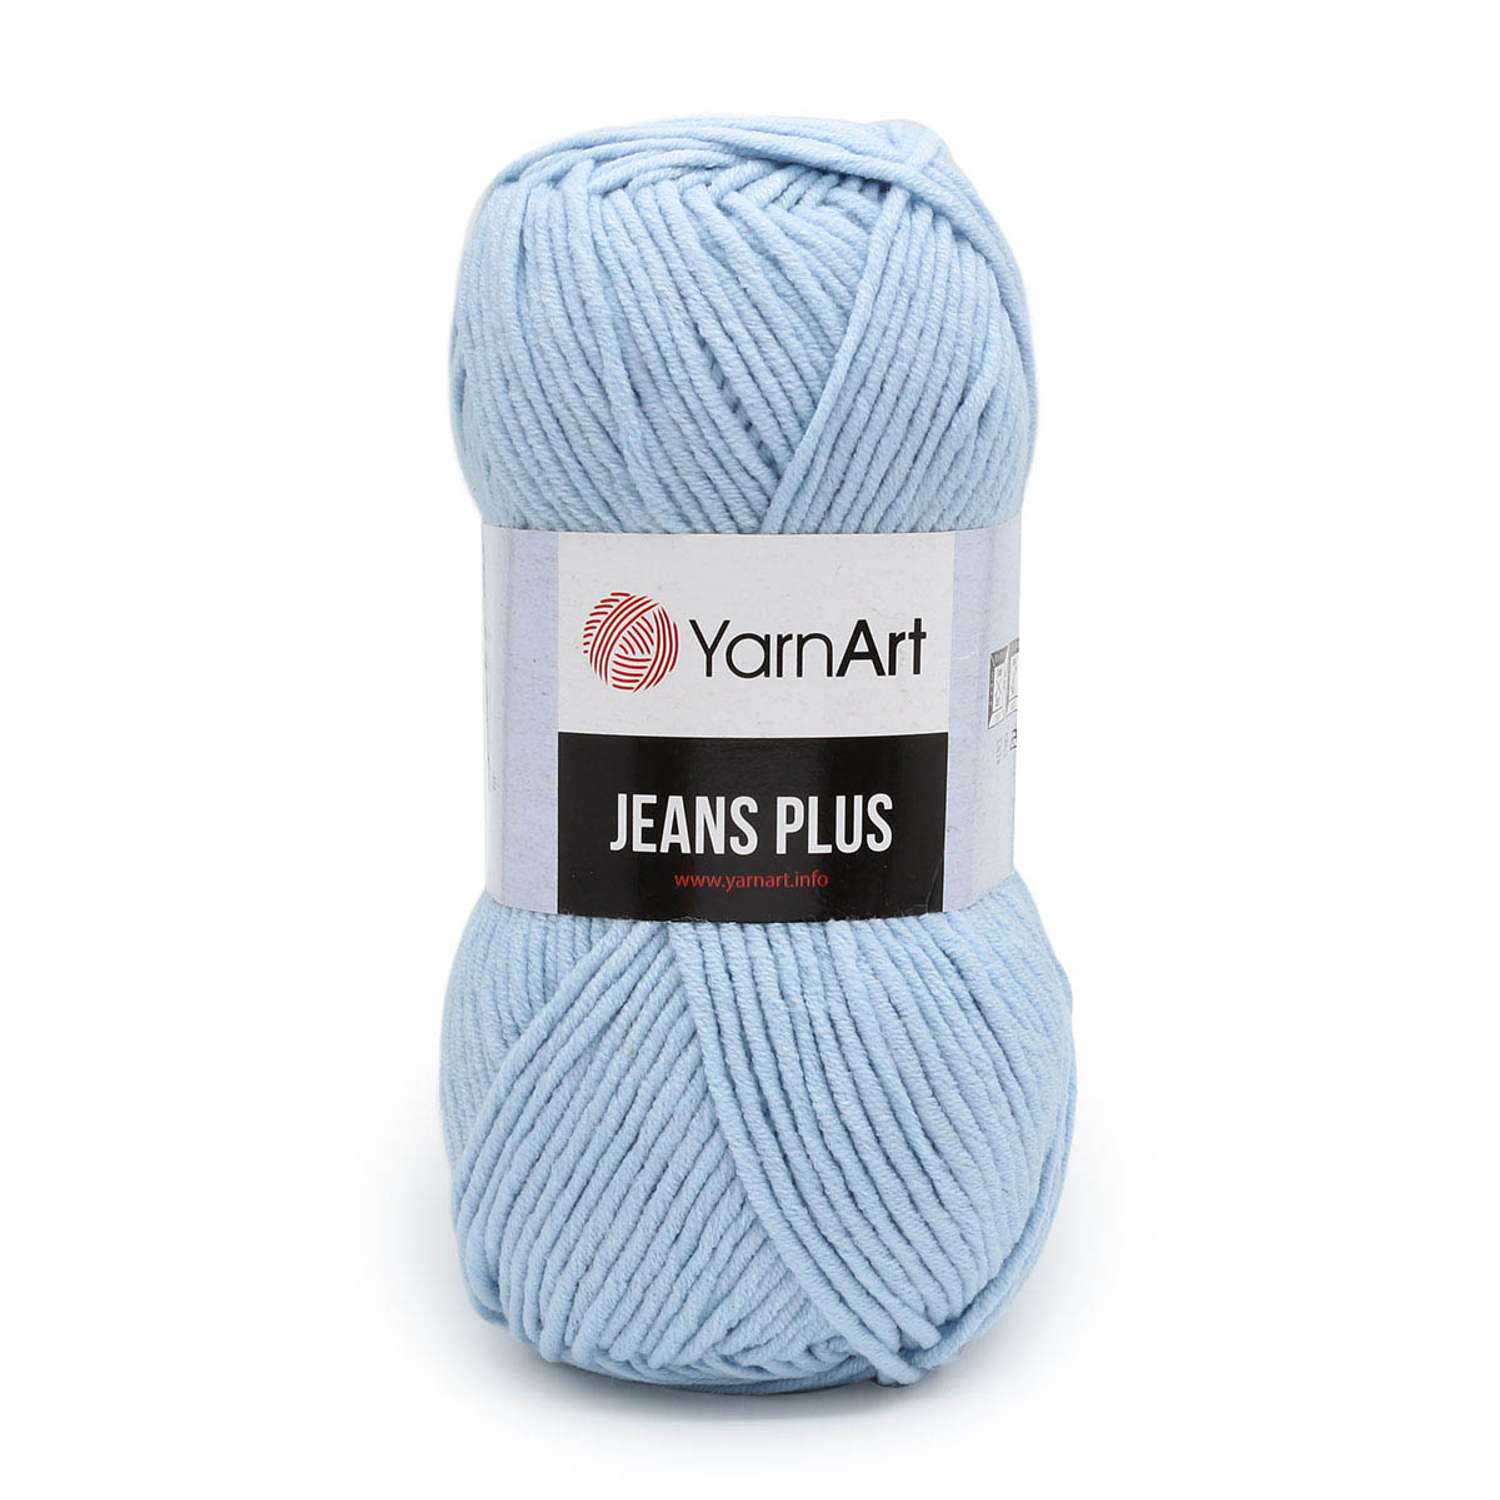 Пряжа YarnArt Jeans Plus объемная летняя 100 г 160 м 75 голубой 5 мотков - фото 6